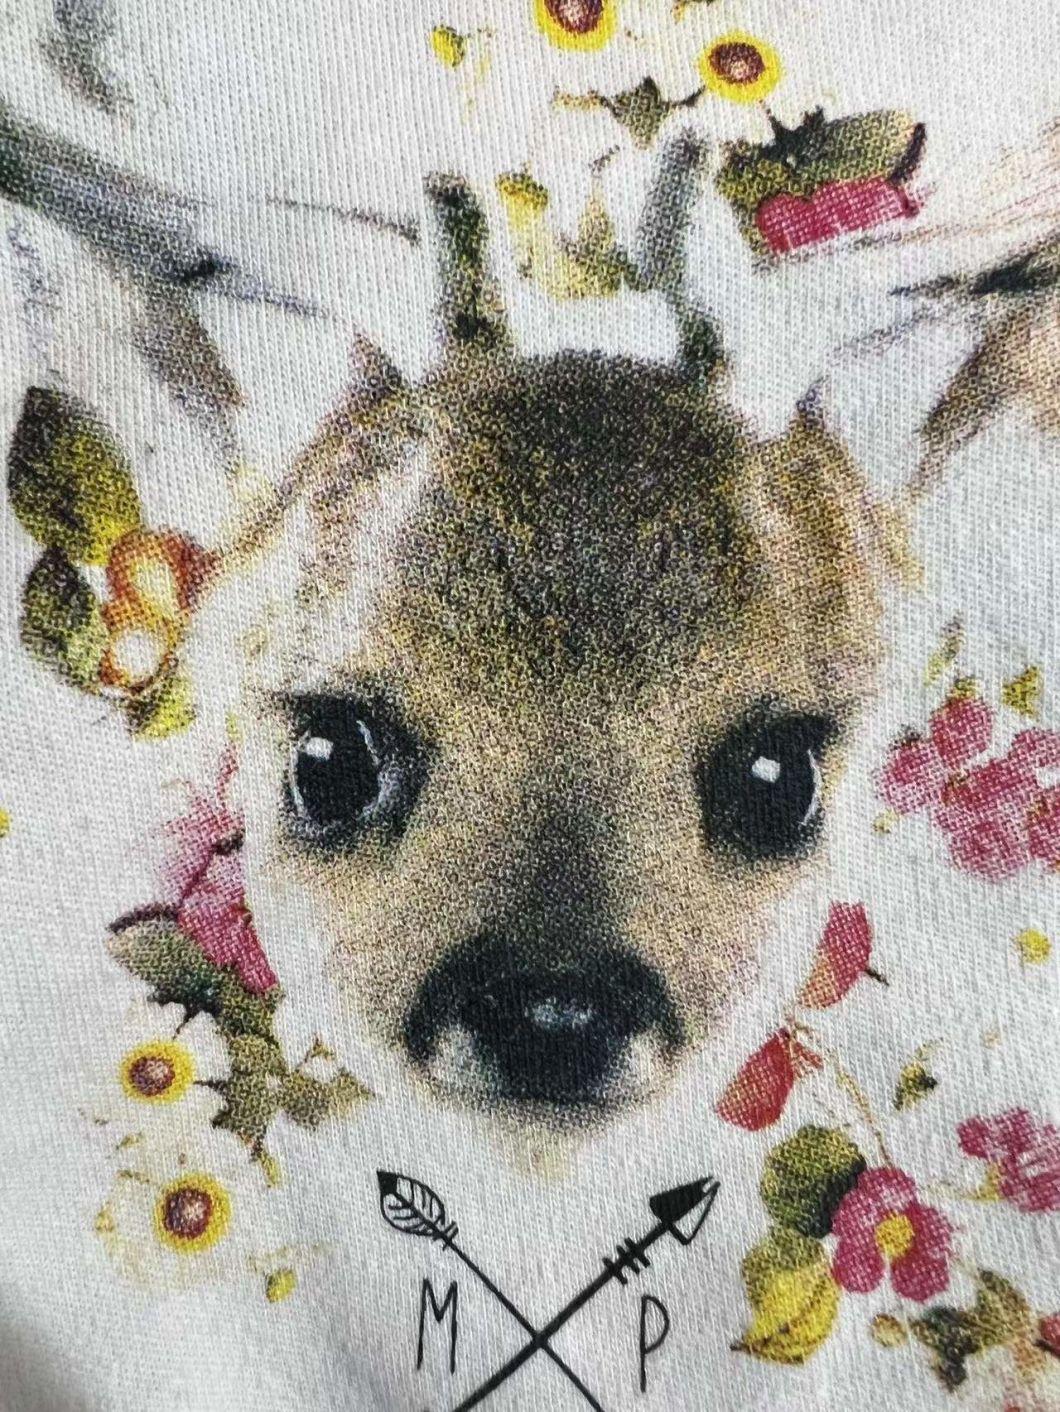 Deer Printed Pet Products Pet Vest Dog Clothing Dog Vest Shirt